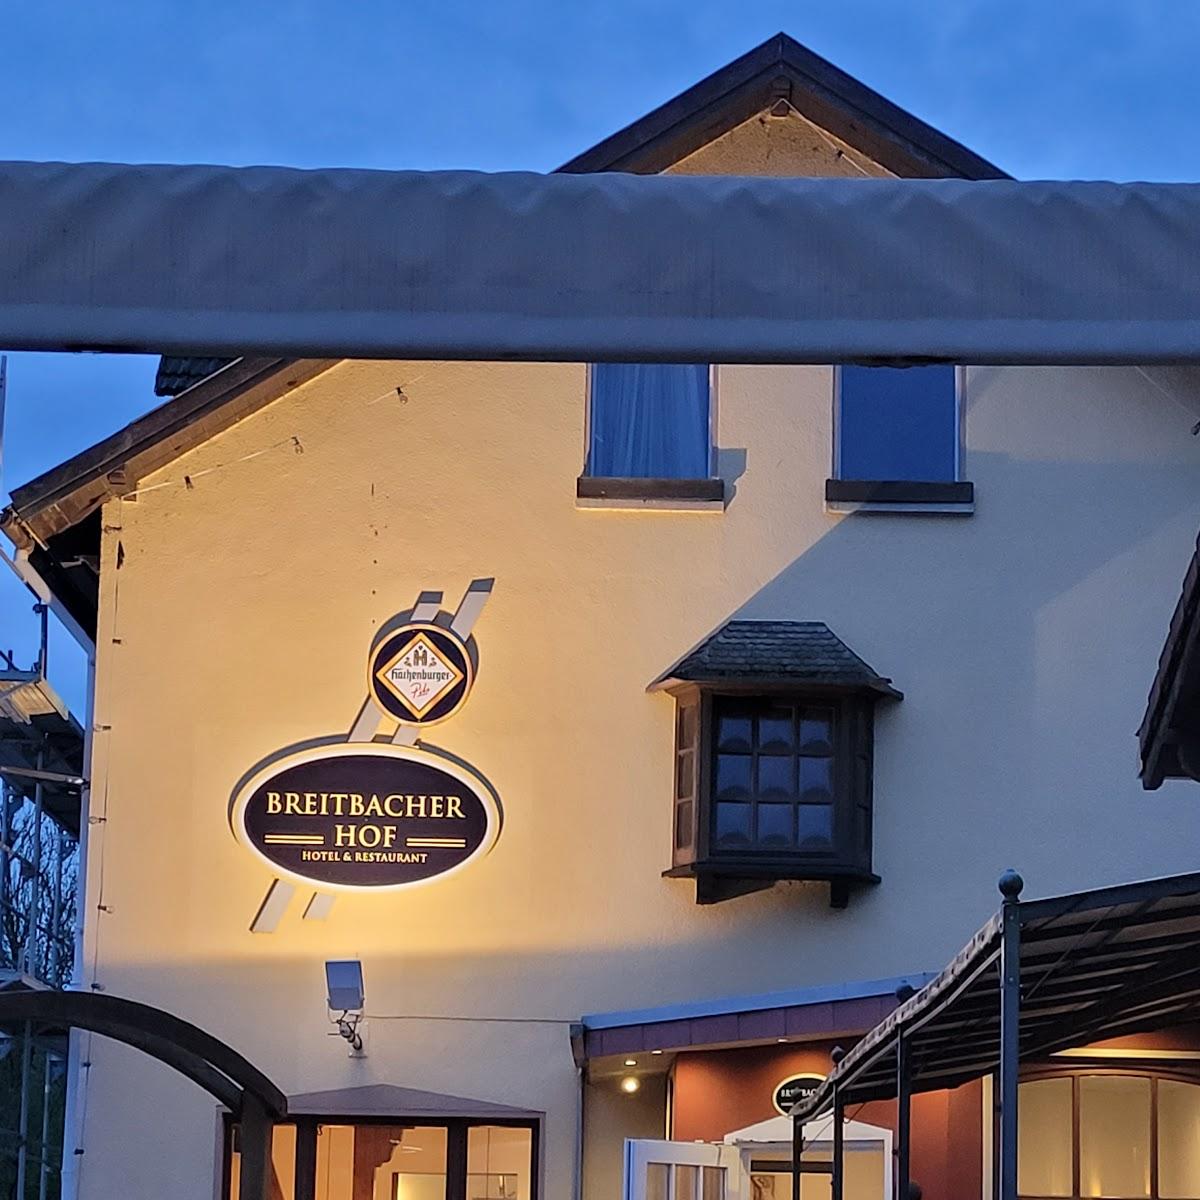 Restaurant "Breitbacher Hof" in Waldbreitbach